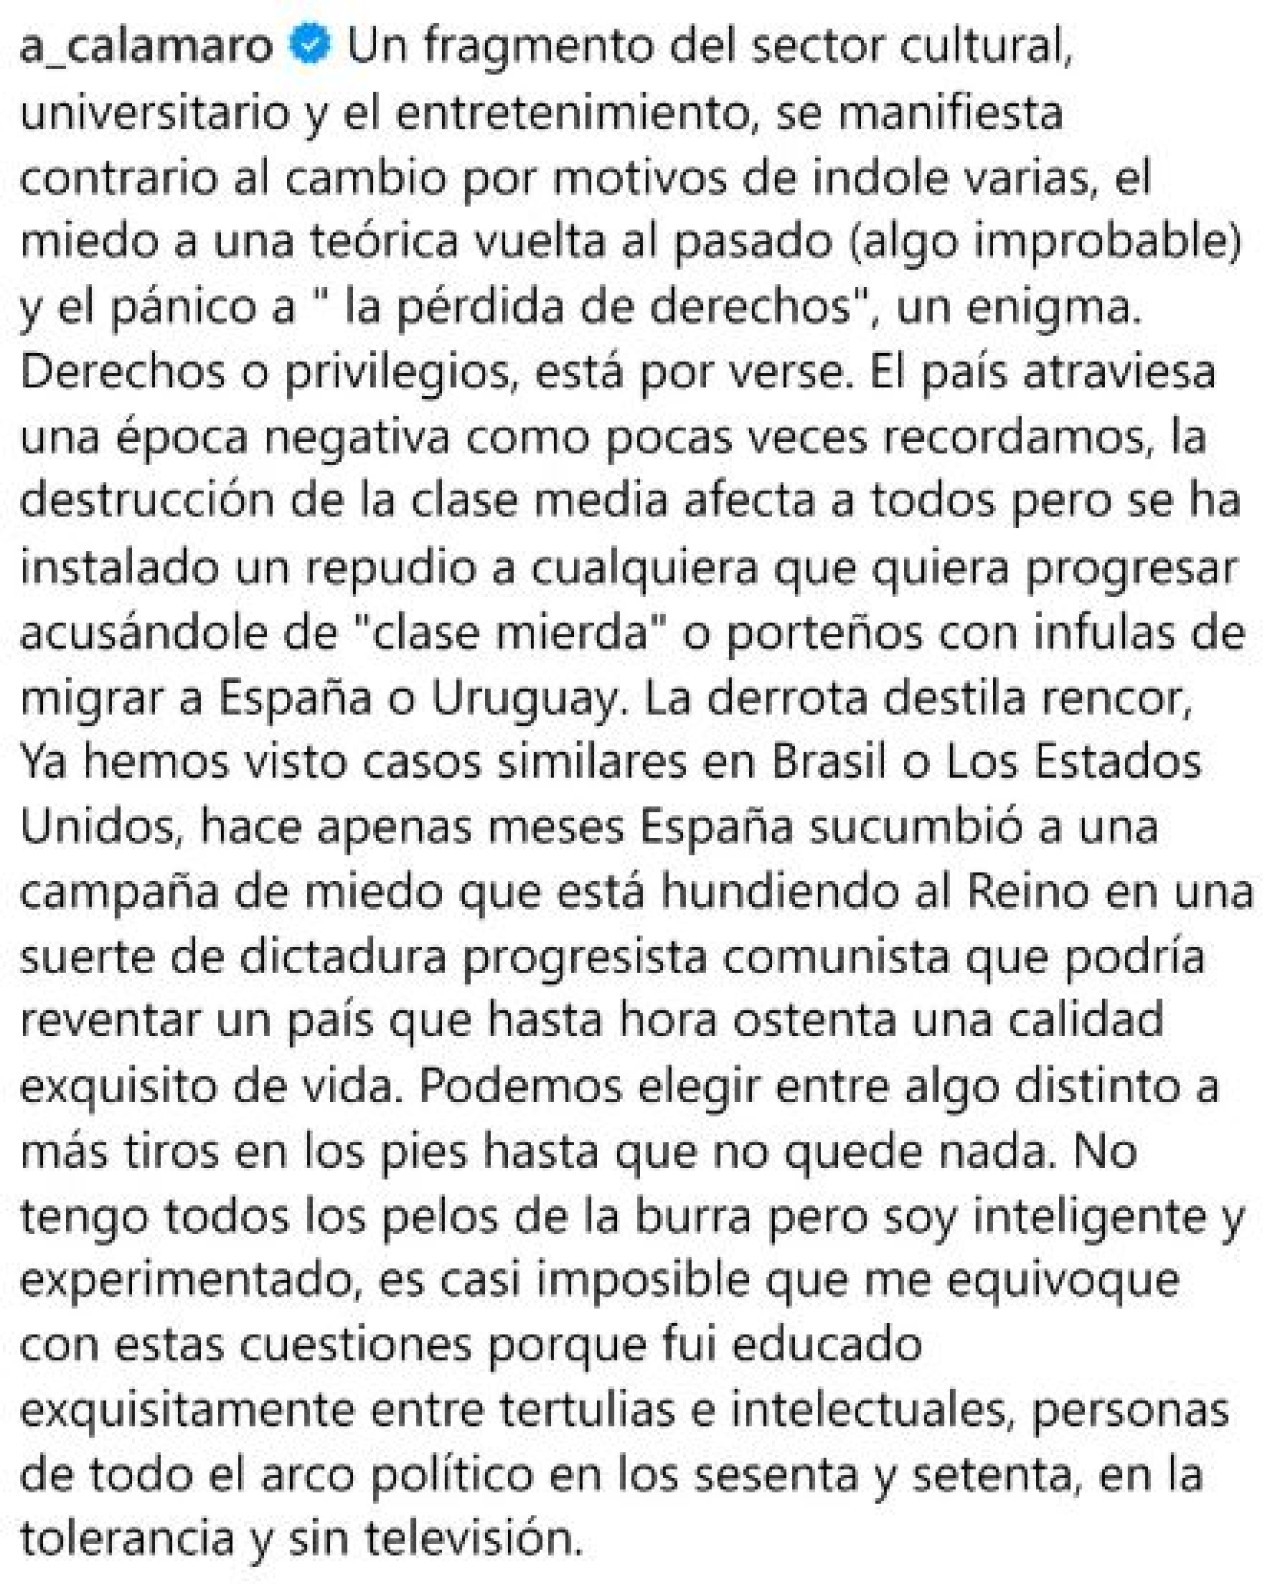 La publicación de Andrés Calamaro en apoyo a Javier Milei (Parte 2). Instagram @a_calamaro.